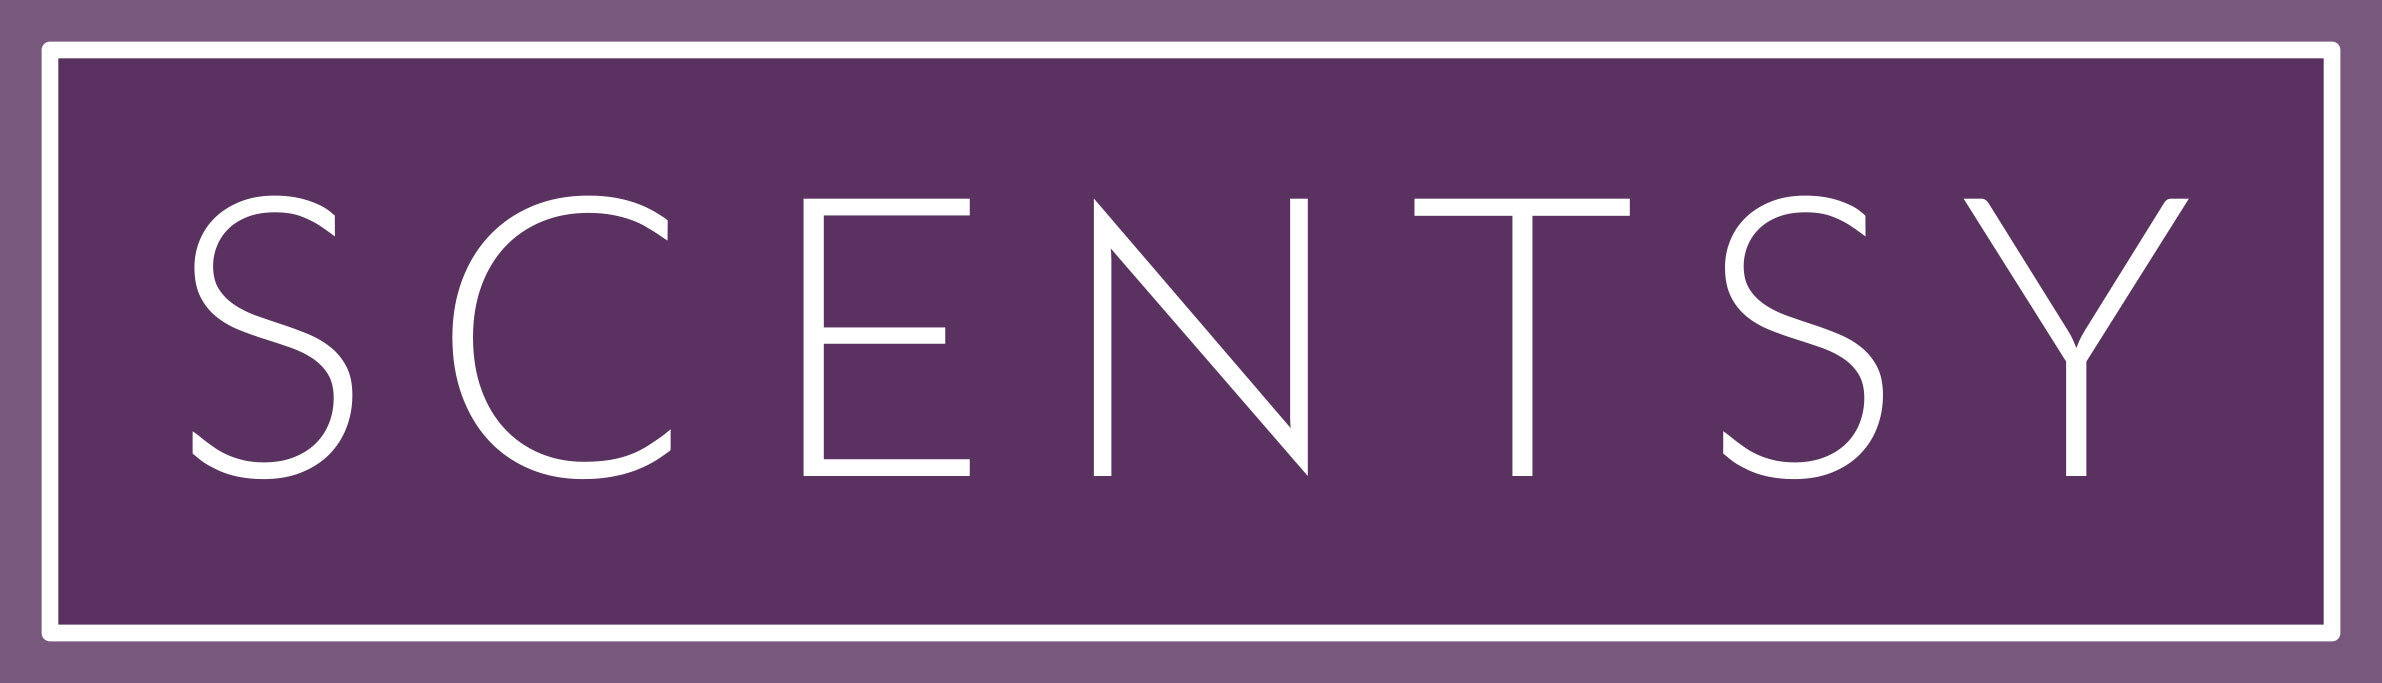 Scentsy-Logo.jpg